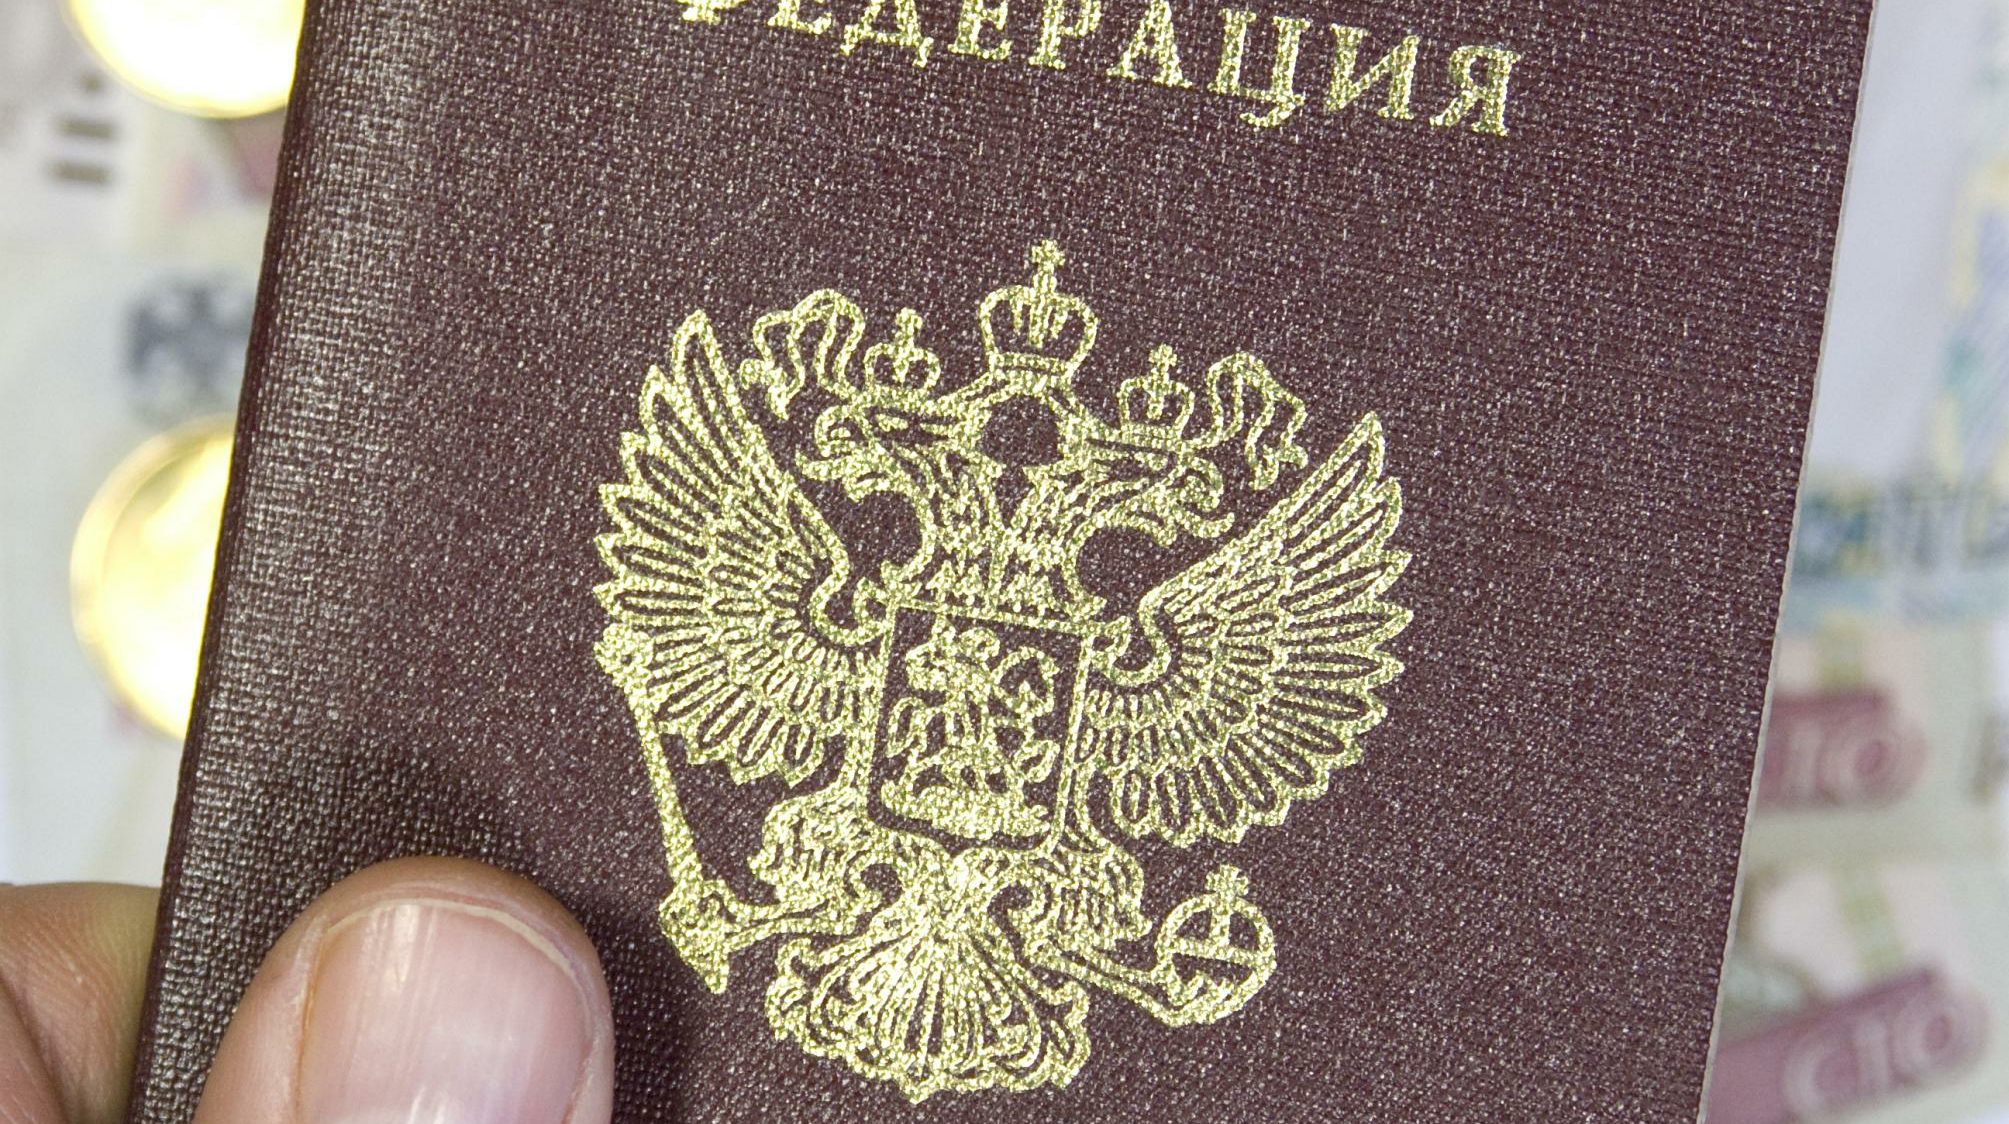 Согласно документу, еще трое несовершеннолетних получат гражданство, после того как присягу дадут их родители Фото: © GLOBAL LOOK press/Sergey Kovalev